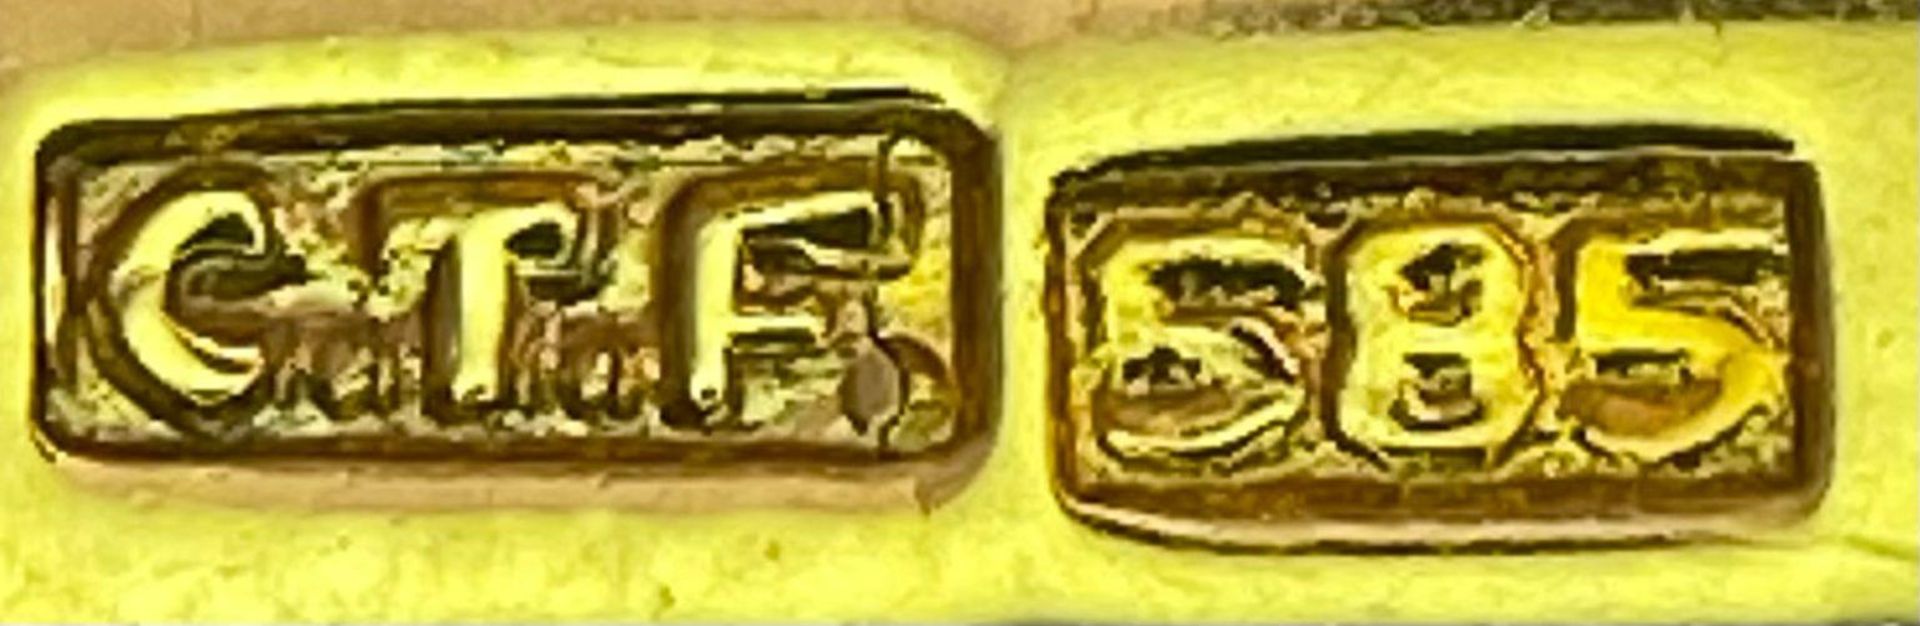 A Pair of 14K Yellow Gold and Diamond Cufflinks. Rich gold, rectangular cufflinks with a - Bild 6 aus 7